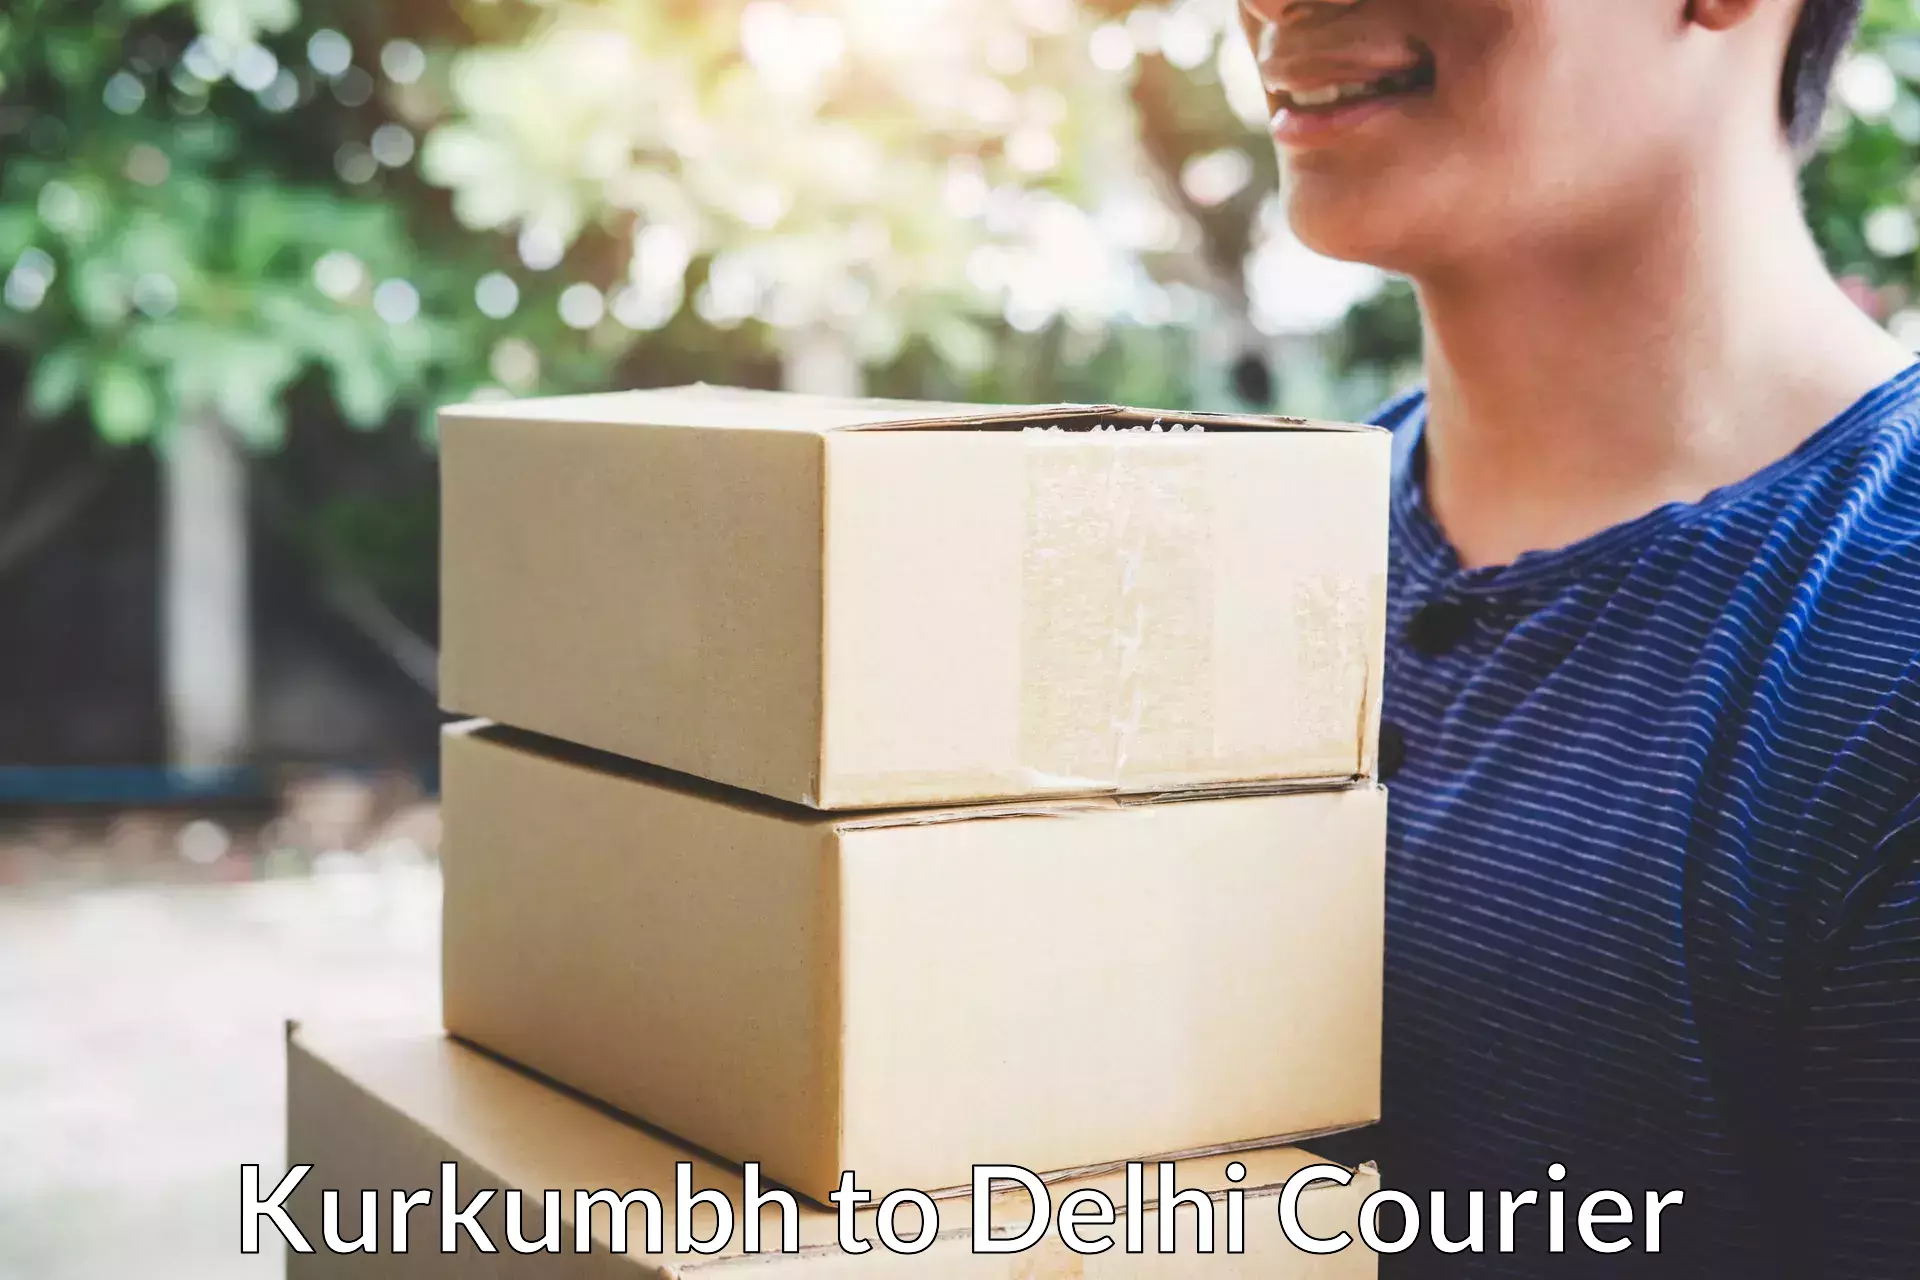 Professional packing services Kurkumbh to Jawaharlal Nehru University New Delhi